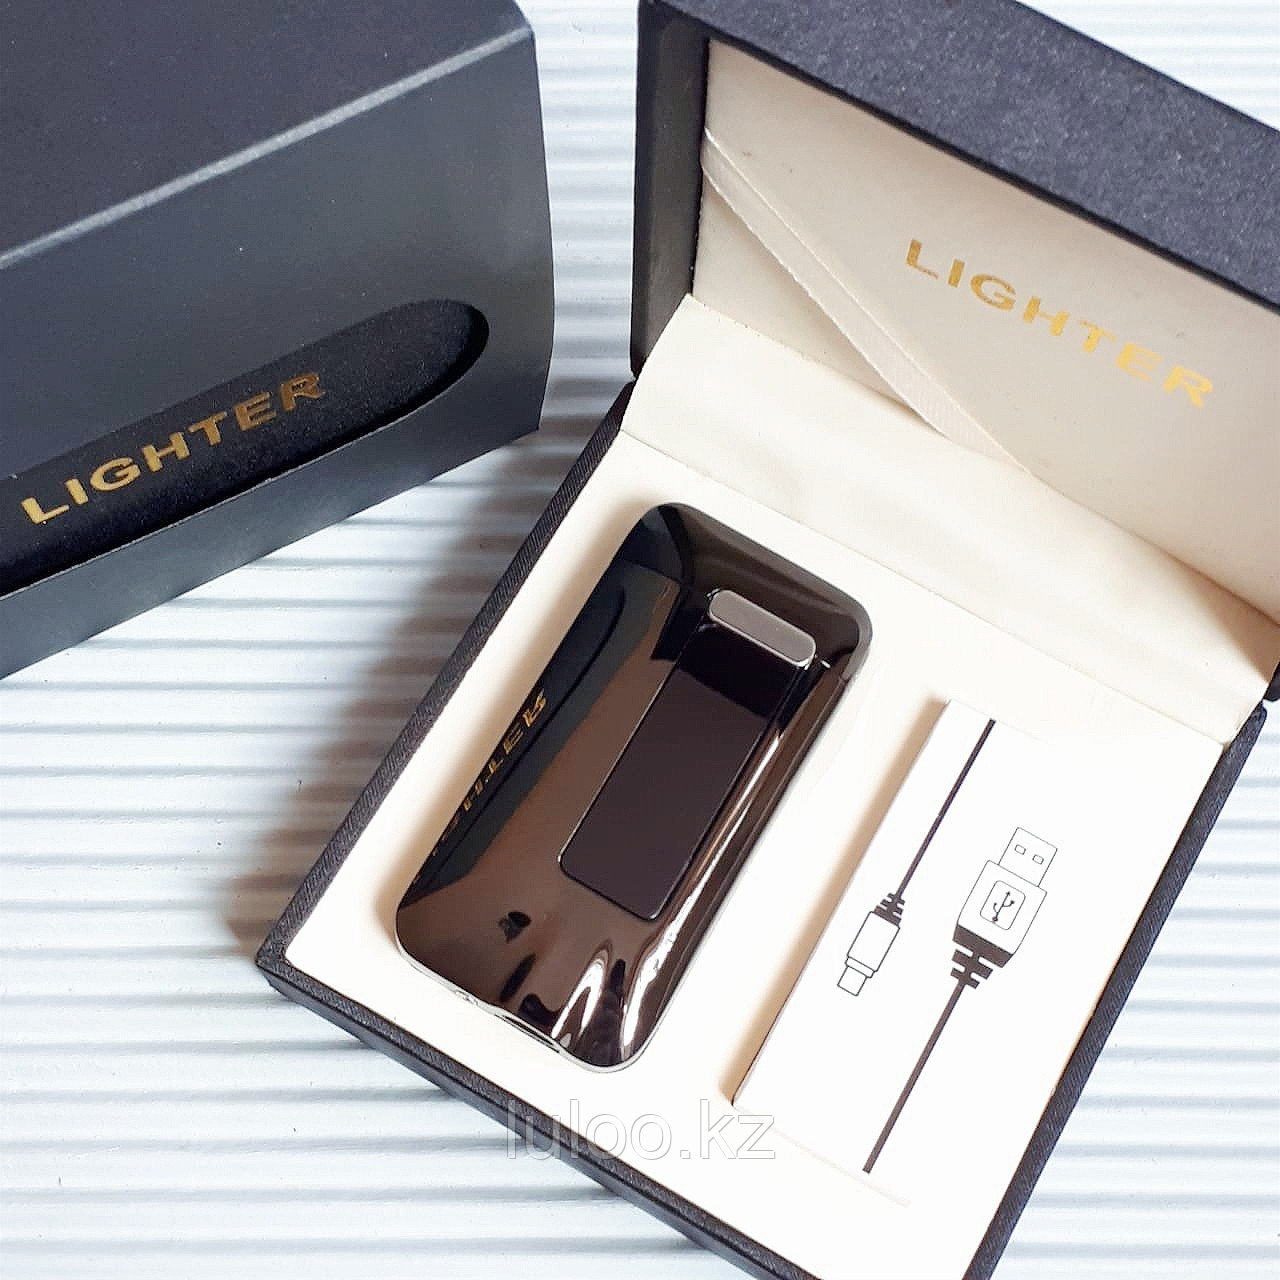 Электроимпульсная USB зажигалка "LIGHTER", черная., фото 1